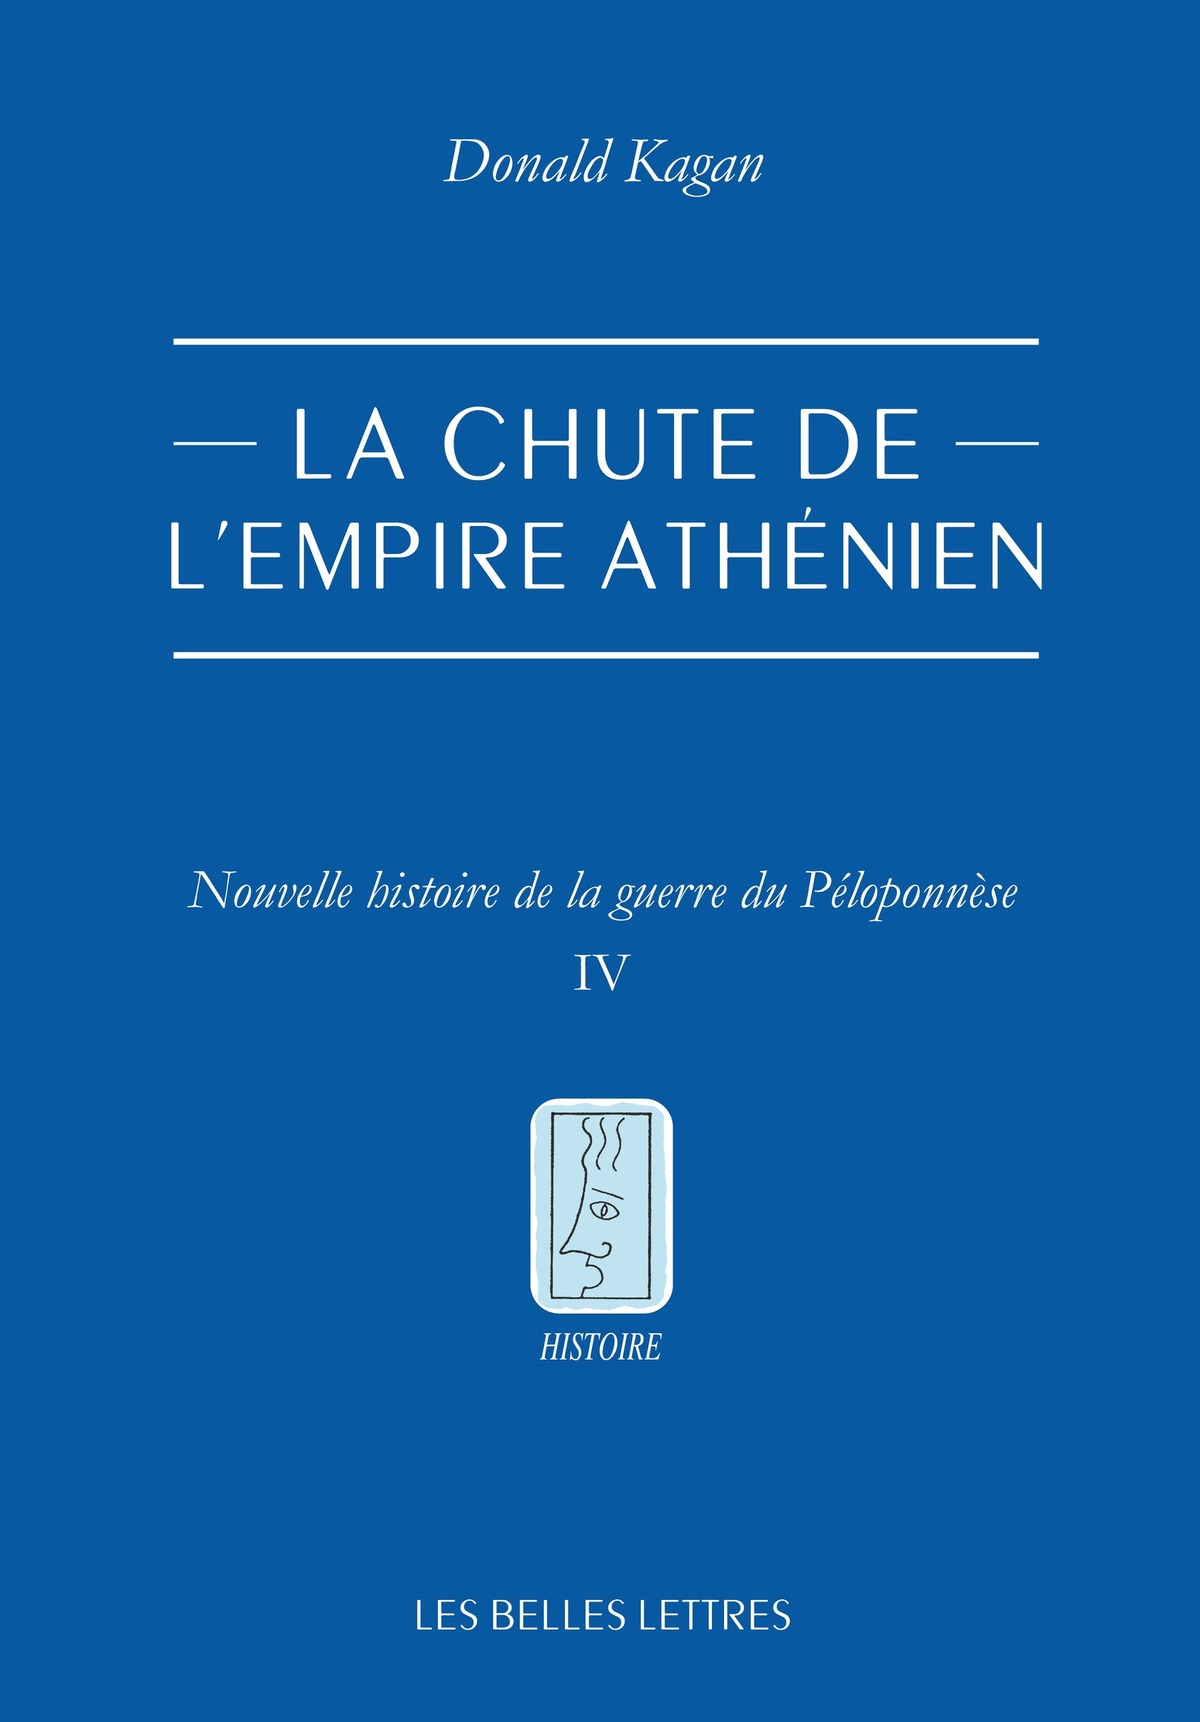 La chute de l'empire athénien